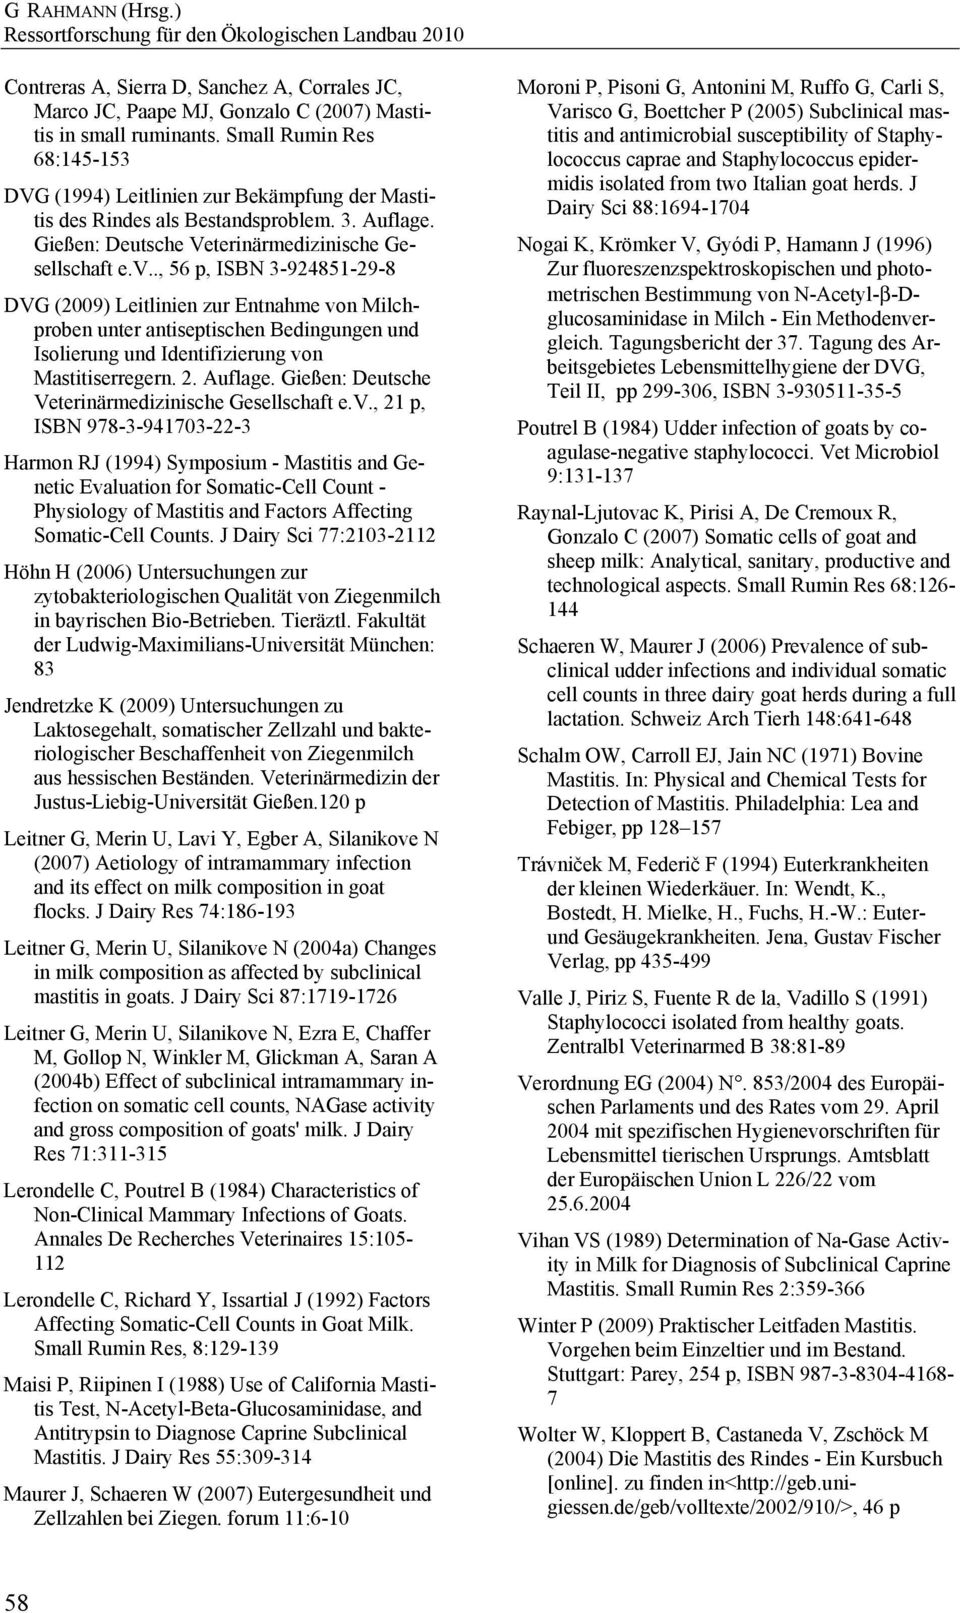 ., 56 p, ISBN 3-924851-29-8 DVG (2009) Leitlinien zur Entnahme von Milchproben unter antiseptischen Bedingungen und Isolierung und Identifizierung von Mastitiserregern. 2. Auflage.